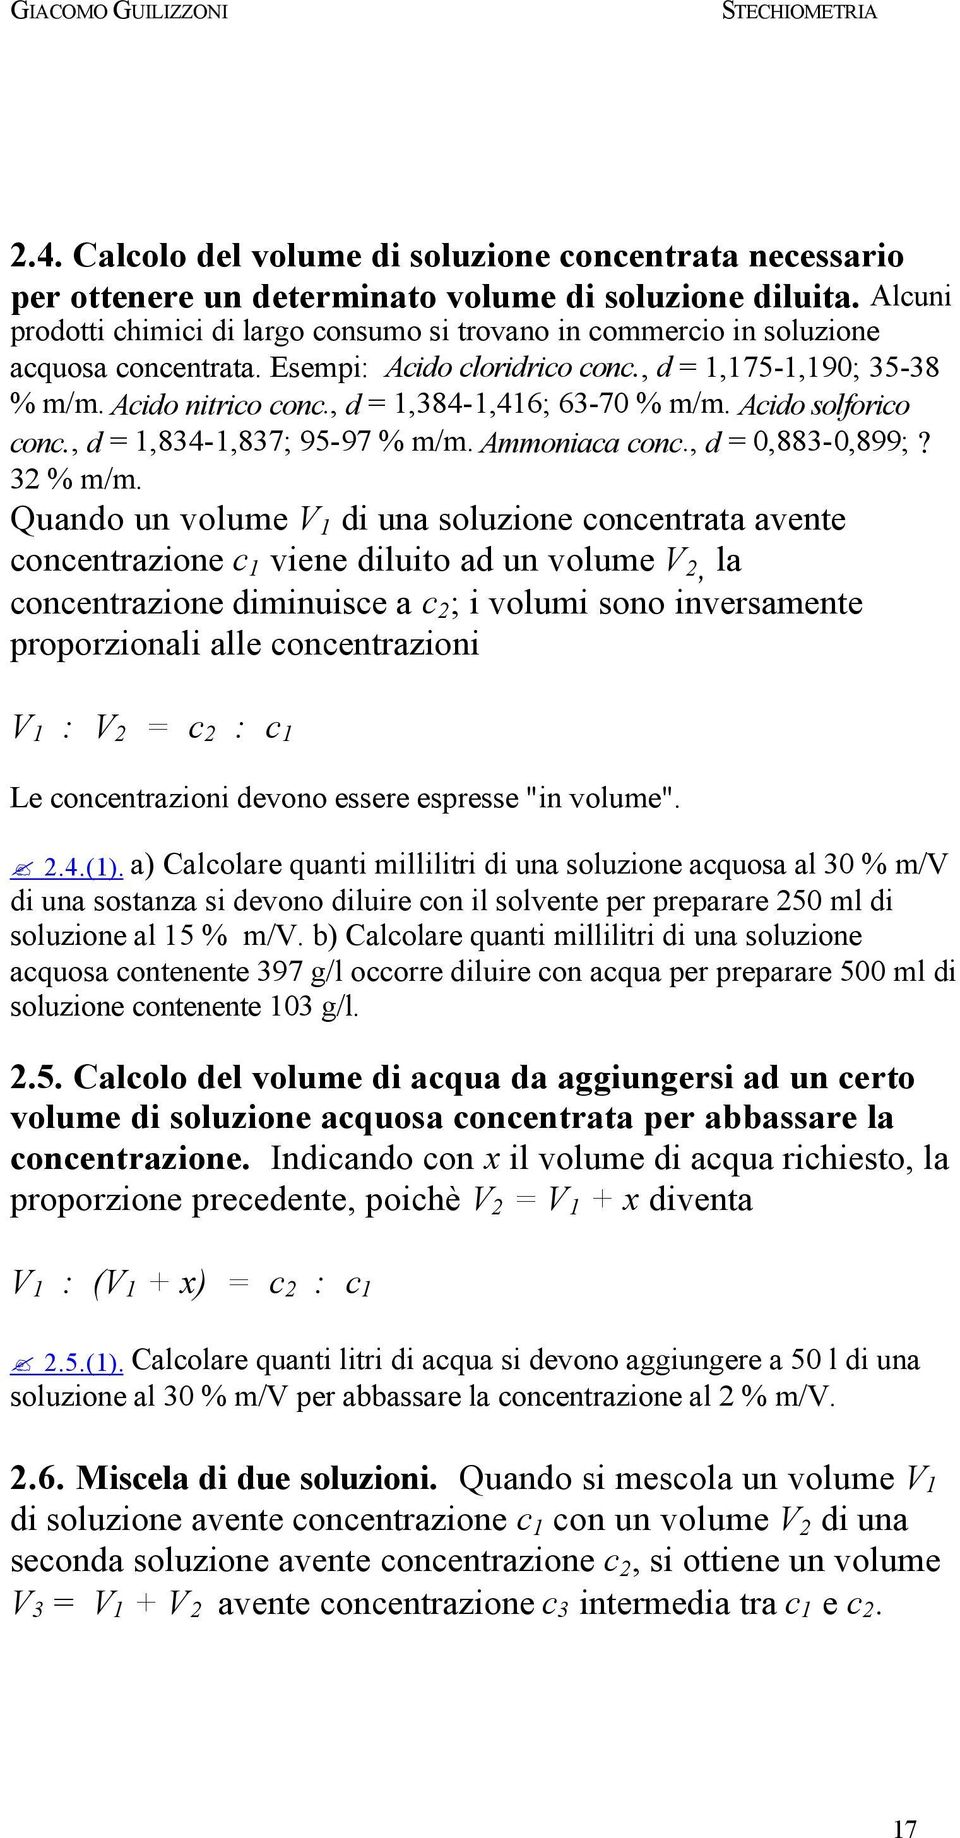 , d = 1,384-1,416; 63-70 % m/m. Acido solforico conc., d = 1,834-1,837; 95-97 % m/m. Ammoniaca conc., d = 0,883-0,899;? 32 % m/m.